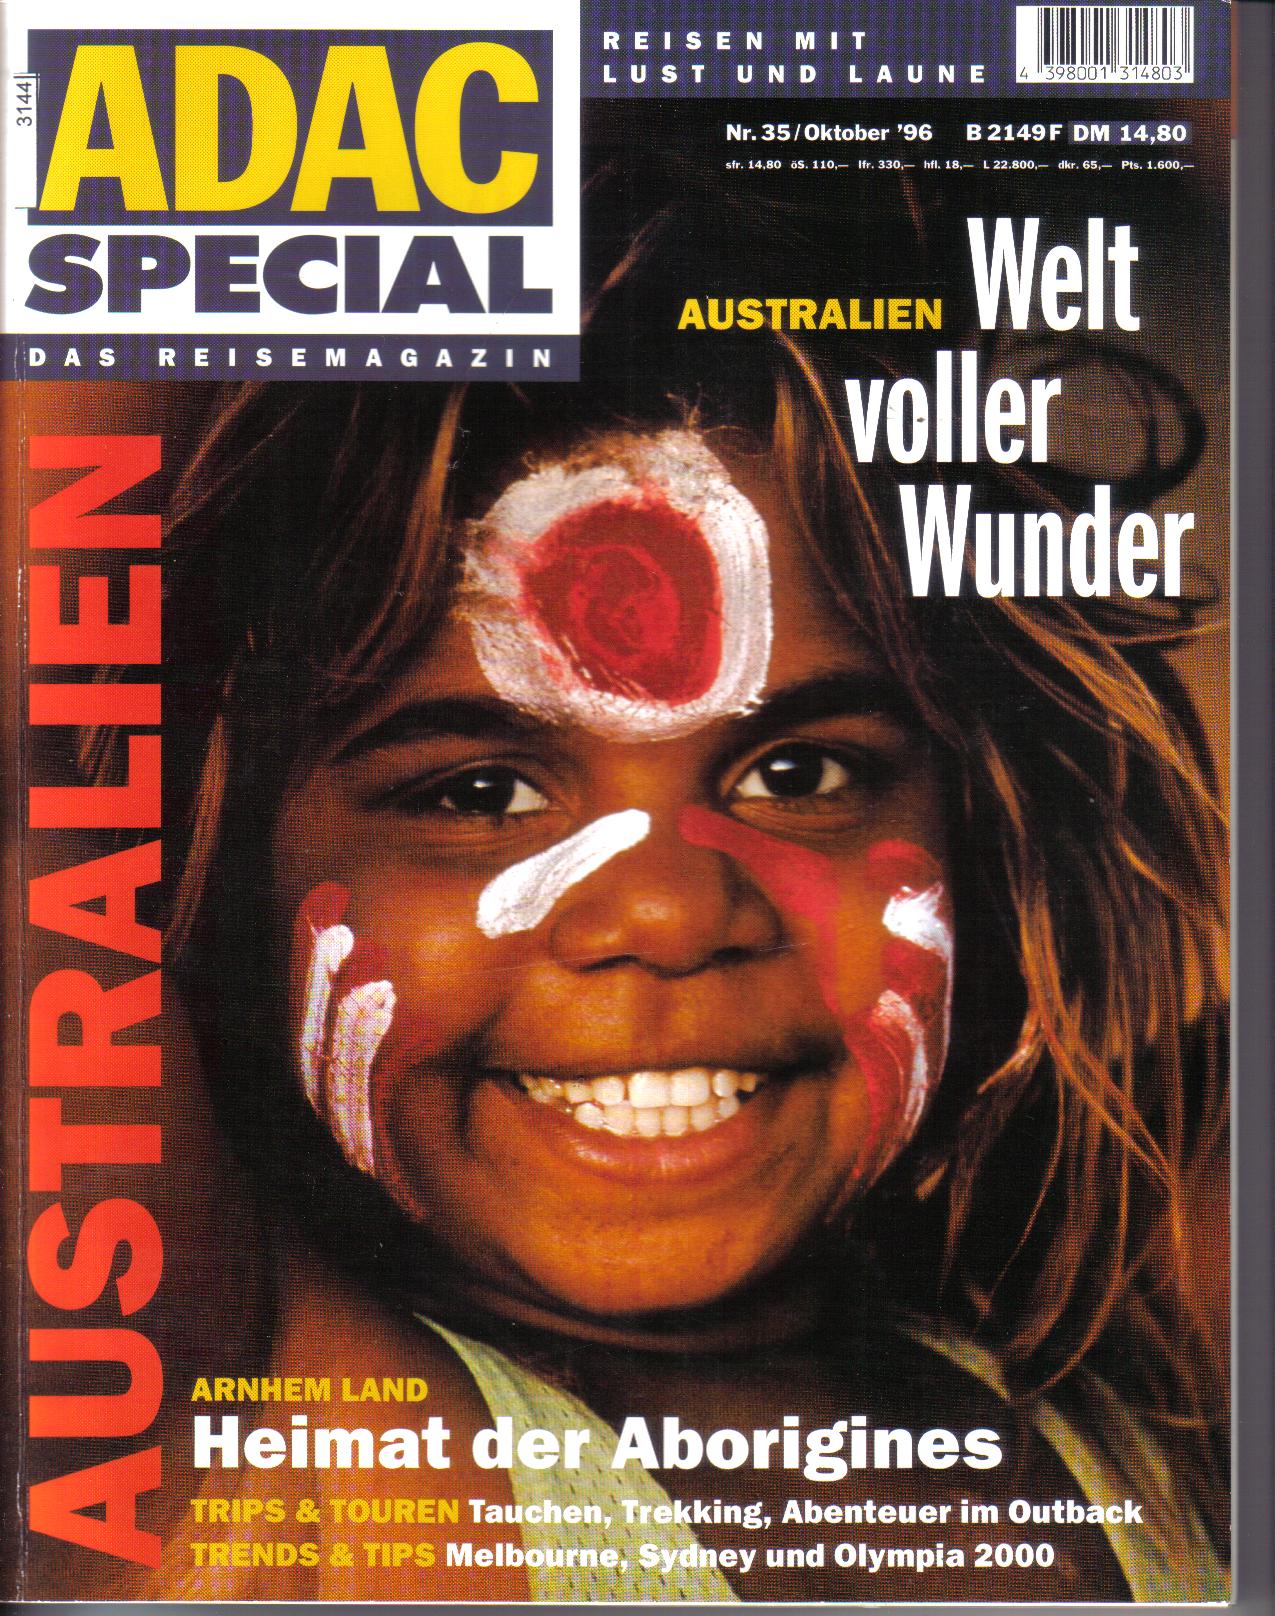 ADAC    Special Das Reisemagazin  AUSTRALIEN